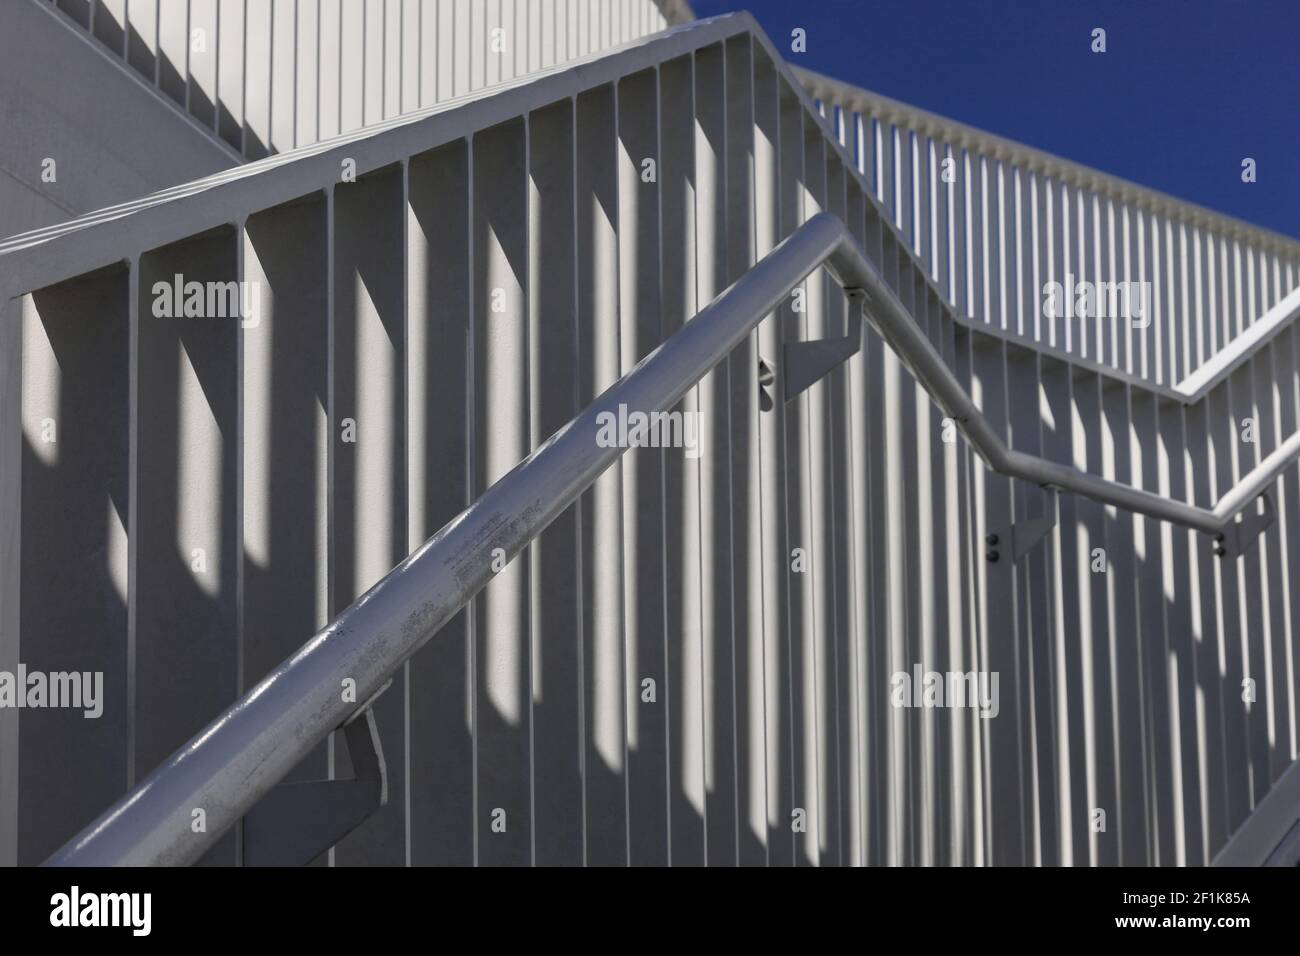 Muster der Treppengeländer an einem blauen Himmel Stockfoto